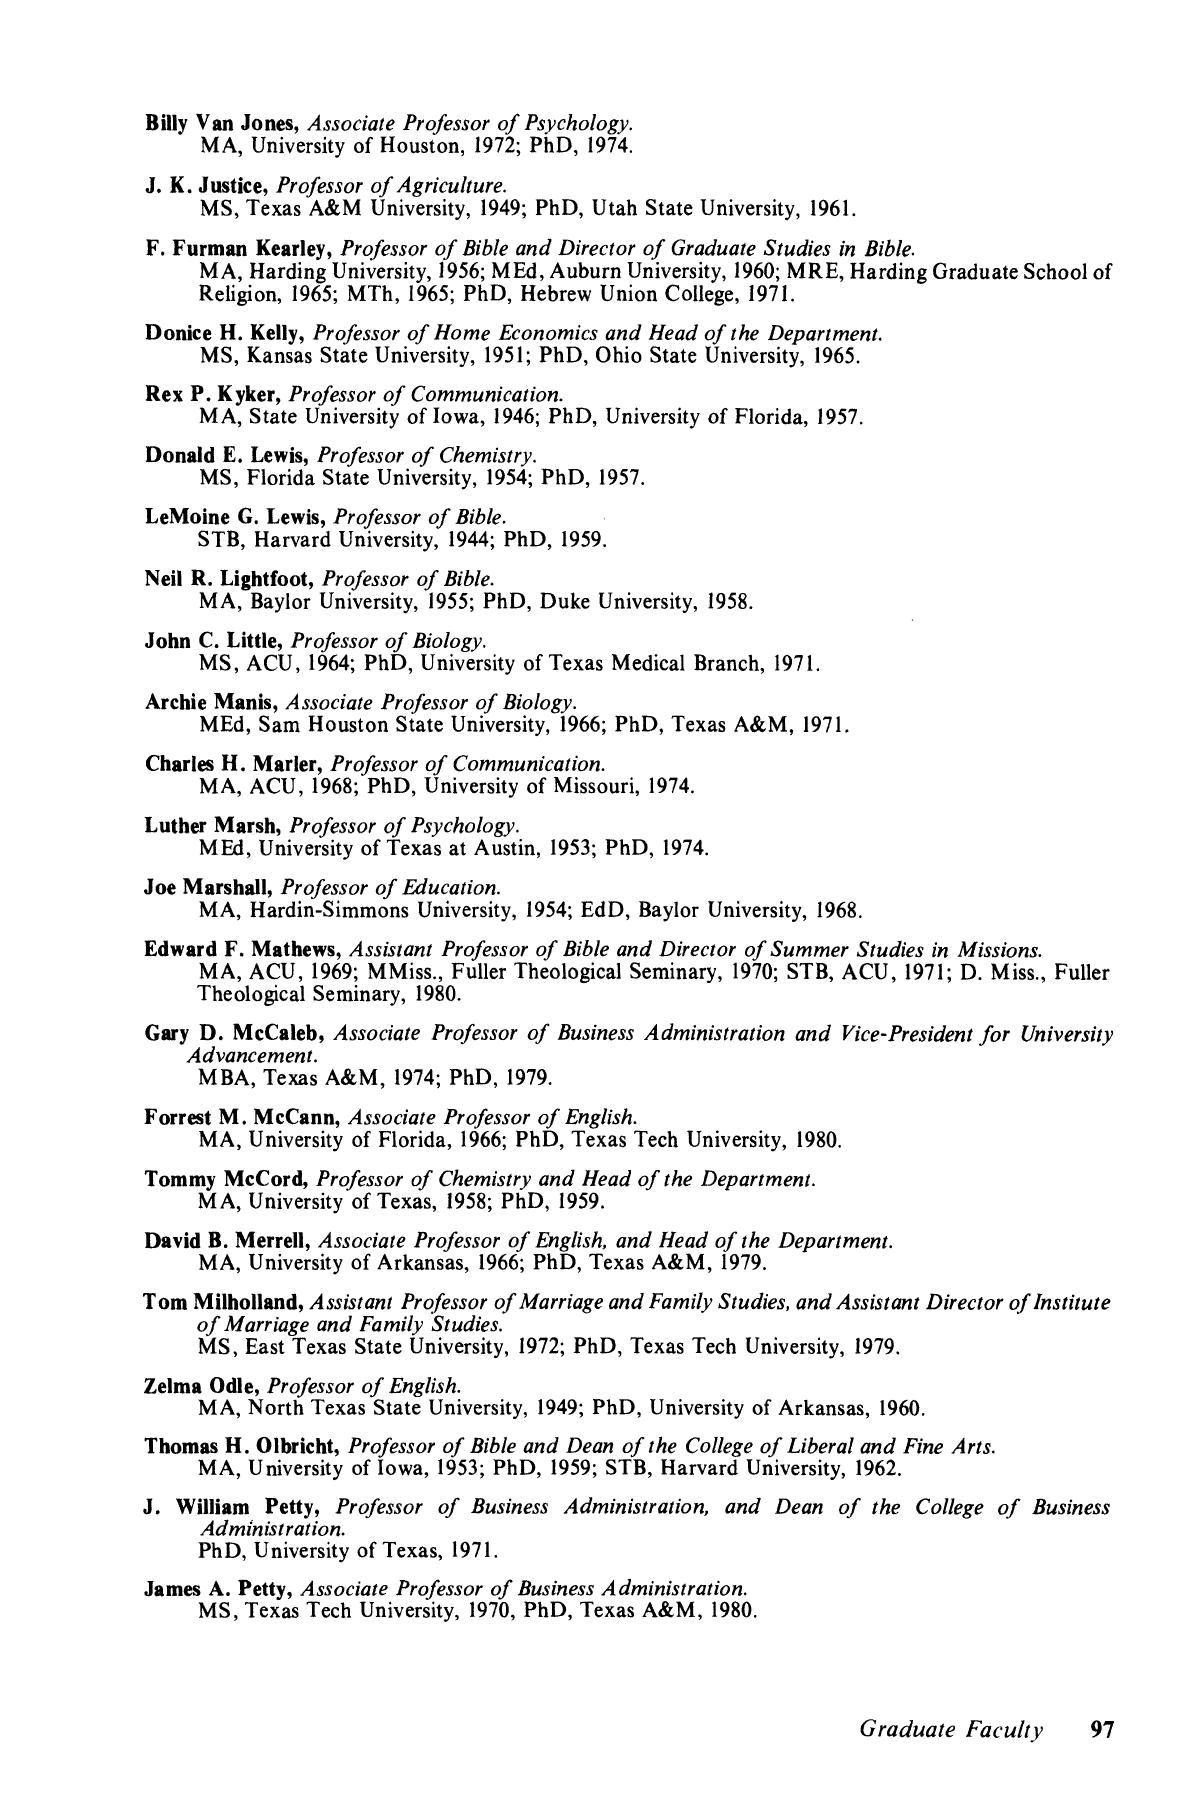 Catalog of Abilene Christian University, 1981-1983
                                                
                                                    97
                                                